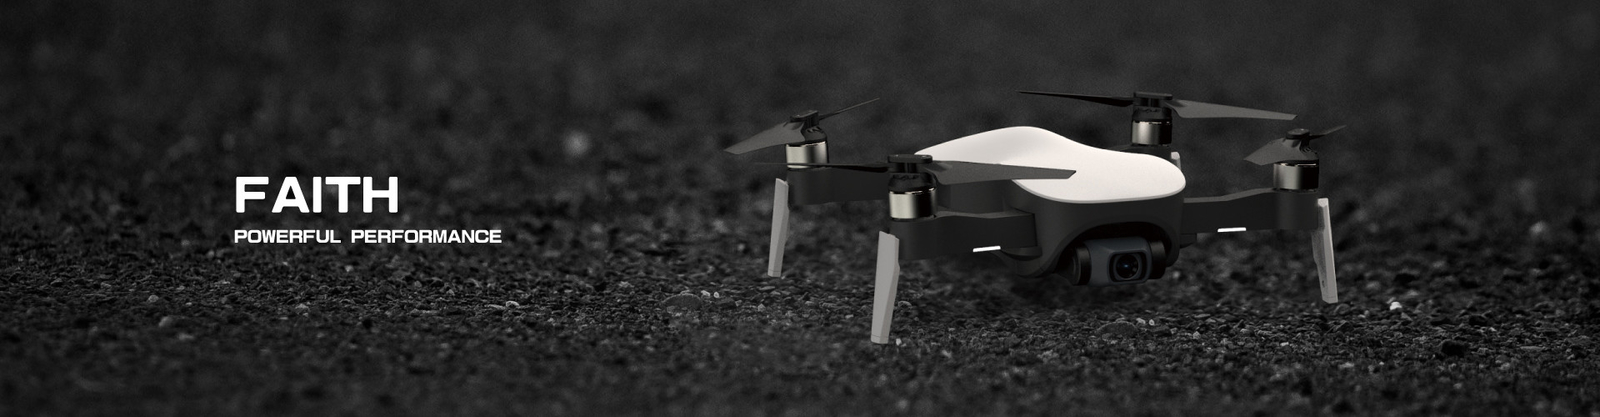 chất lượng Cfly Drone nhà máy sản xuất